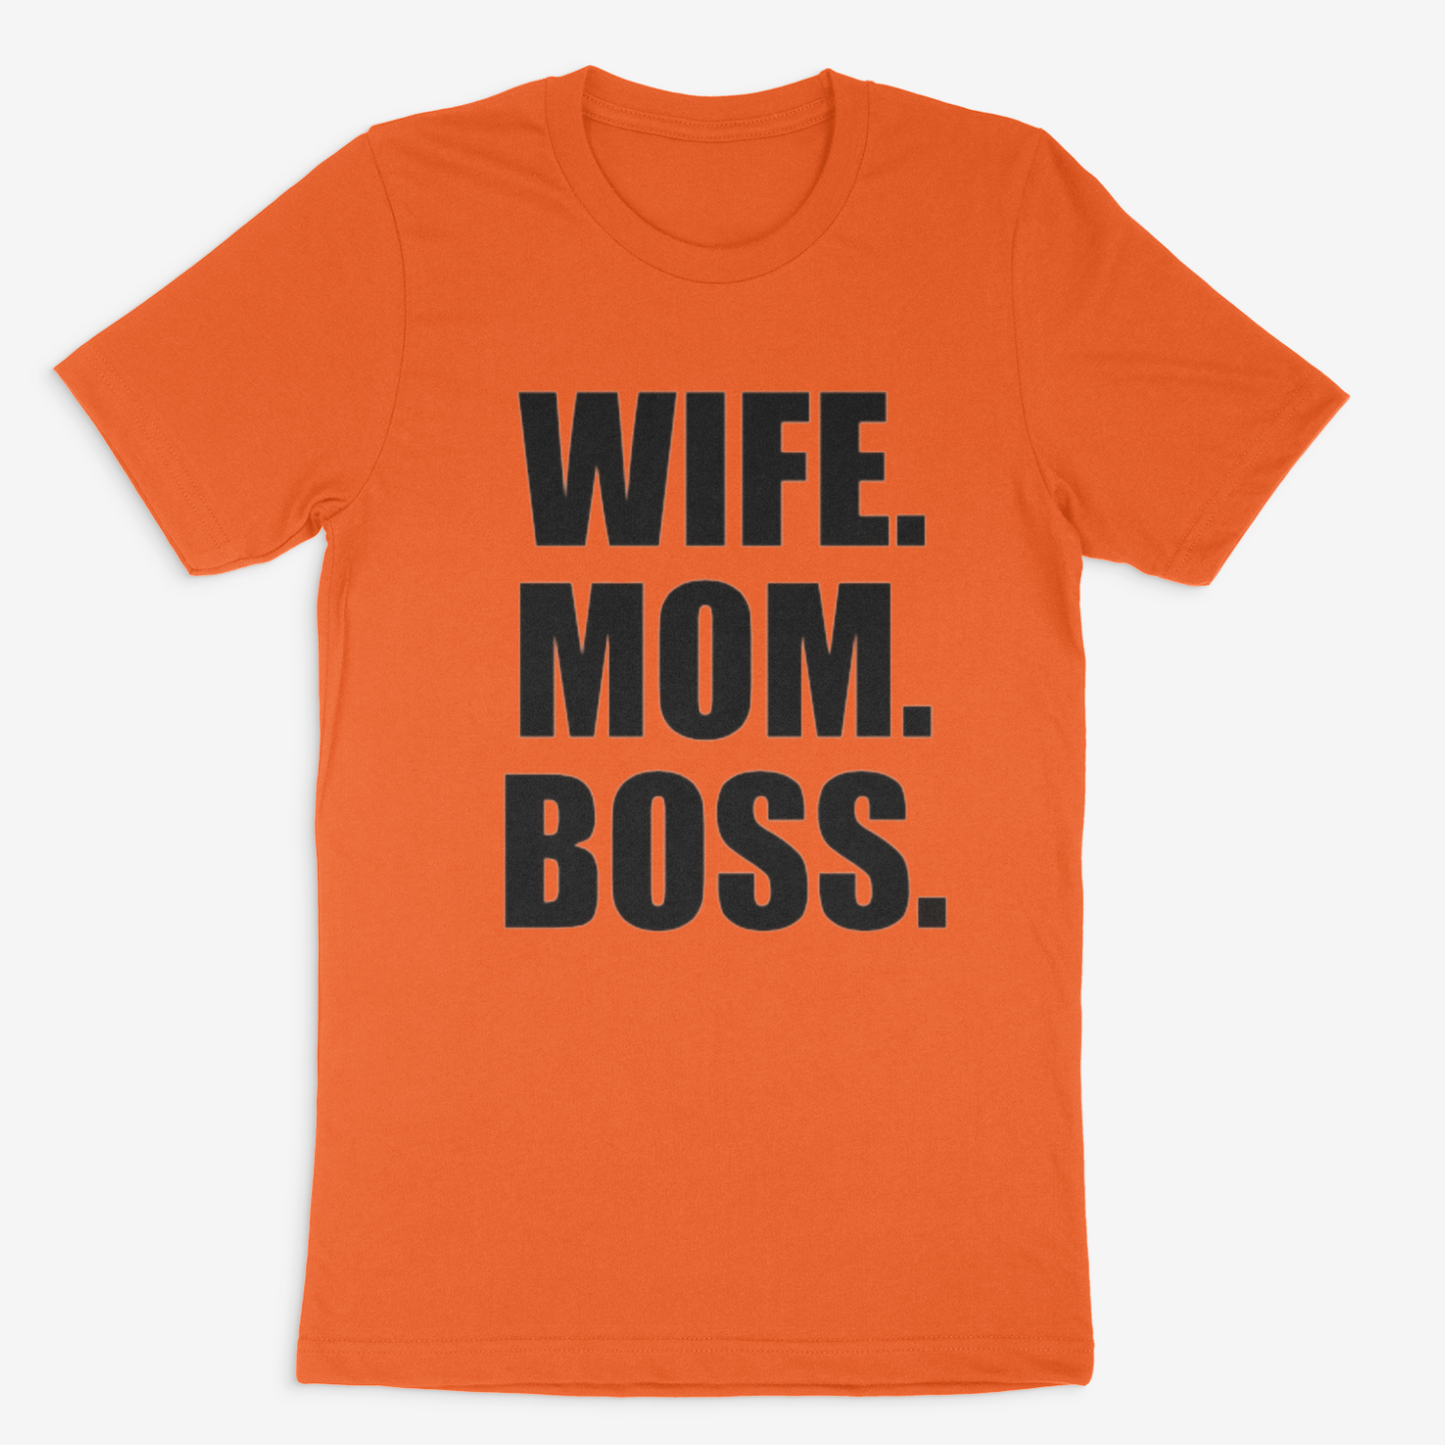 Wife. Mom. Boss Tee